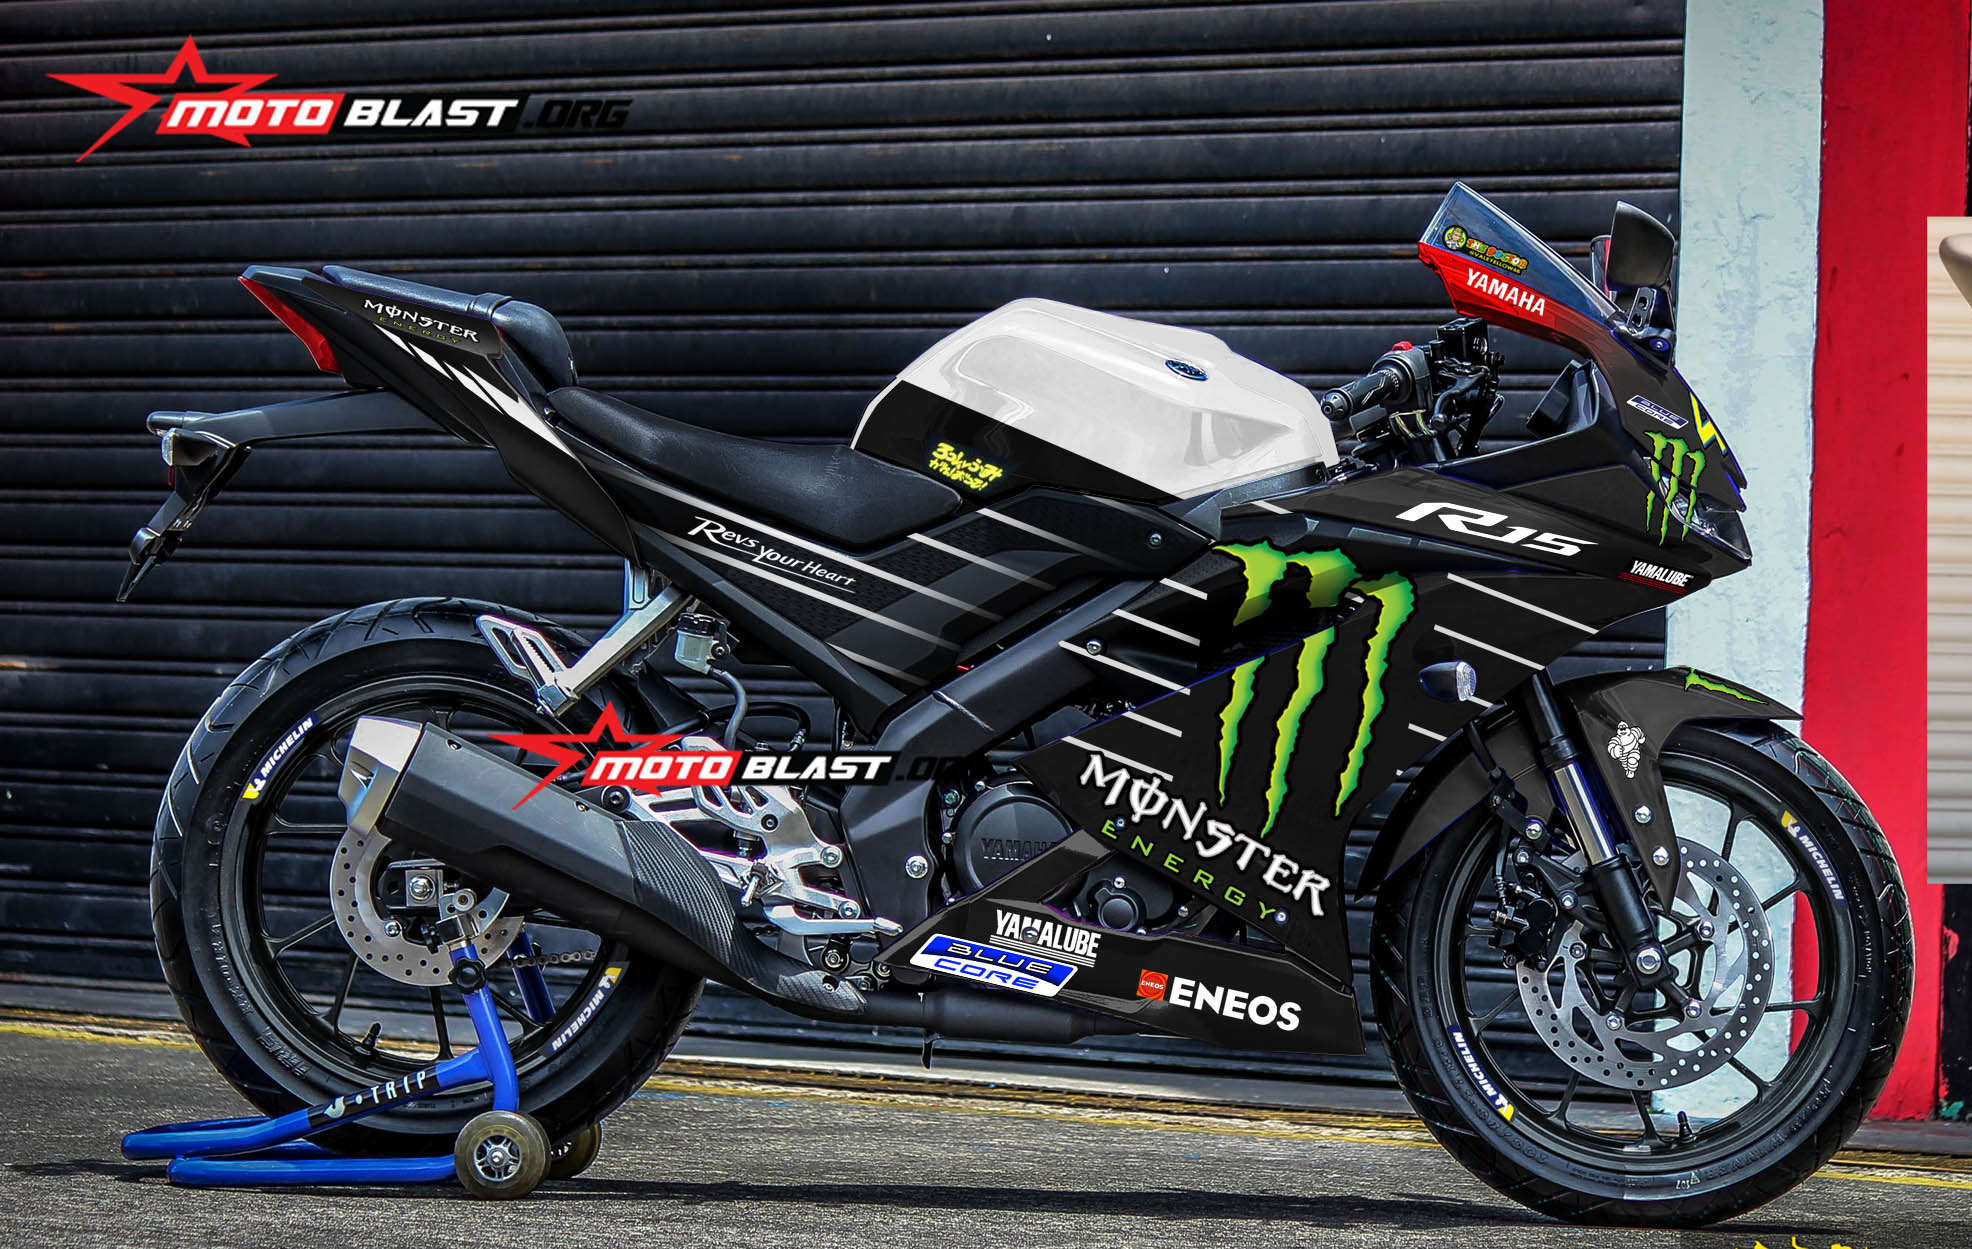 Modifikasi Striping Yamaha R15 V3 Monster Gp 2019 Motoblast